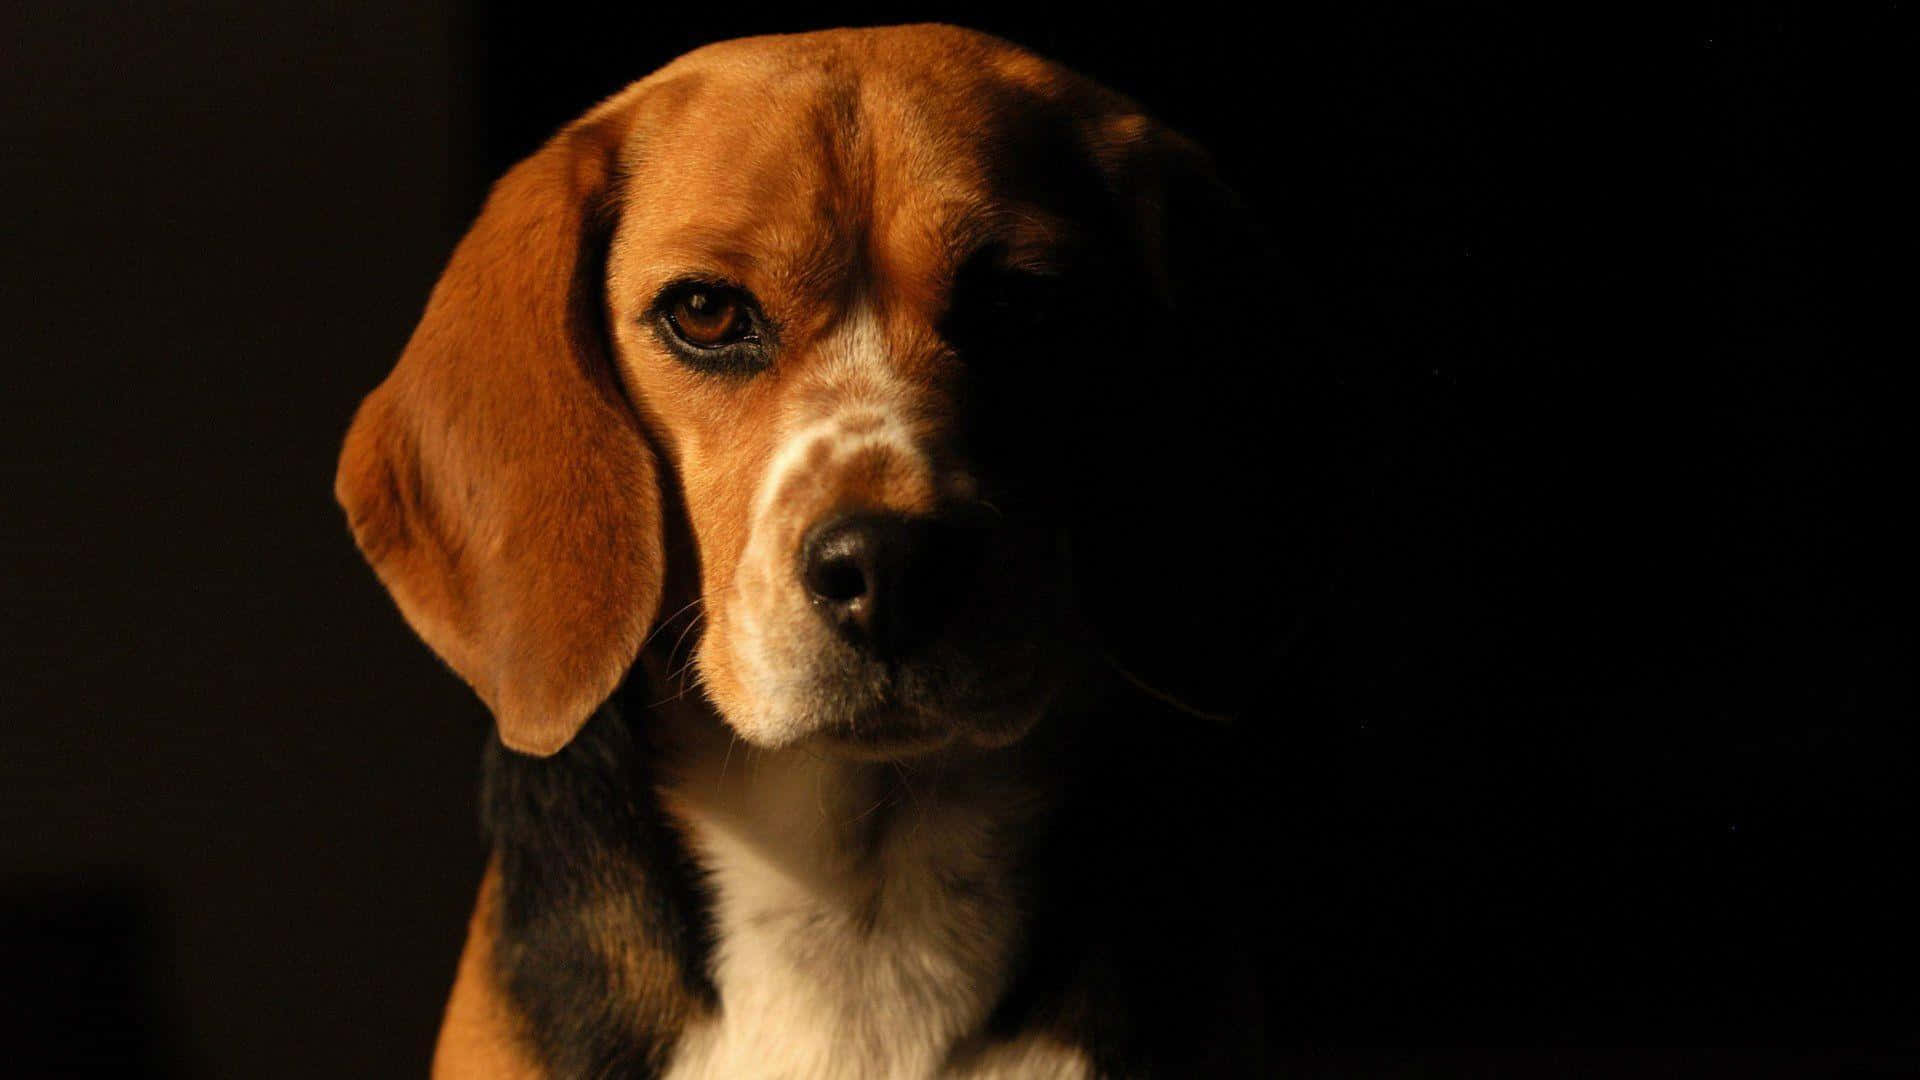 A Beagle Dog Ready to Play!